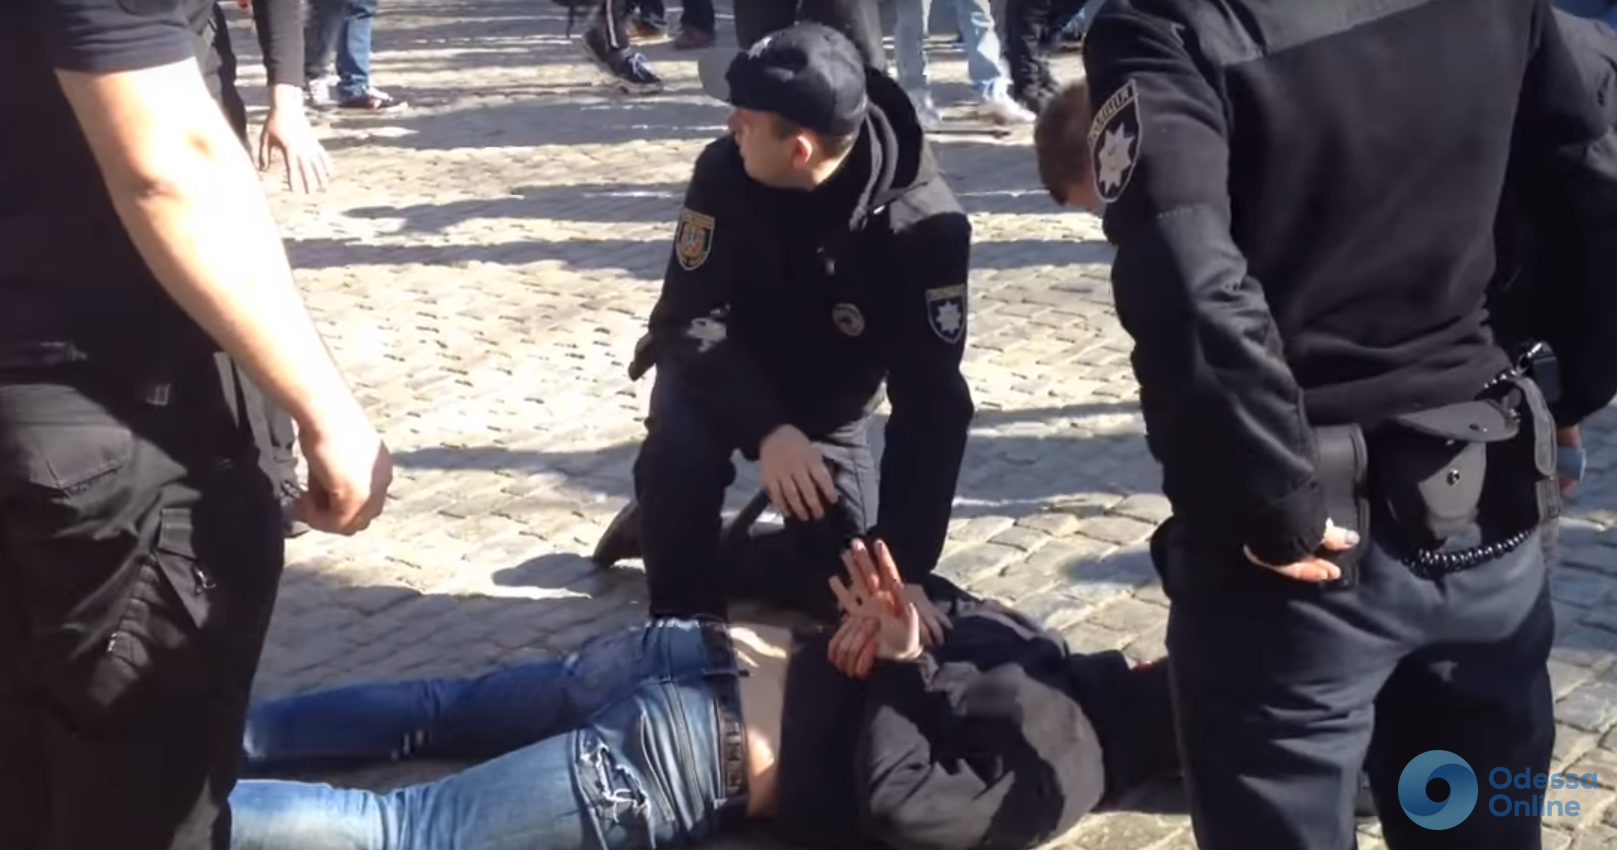 Хулиганство и нападение на полицейского: правоохранители задержали трех одесситов